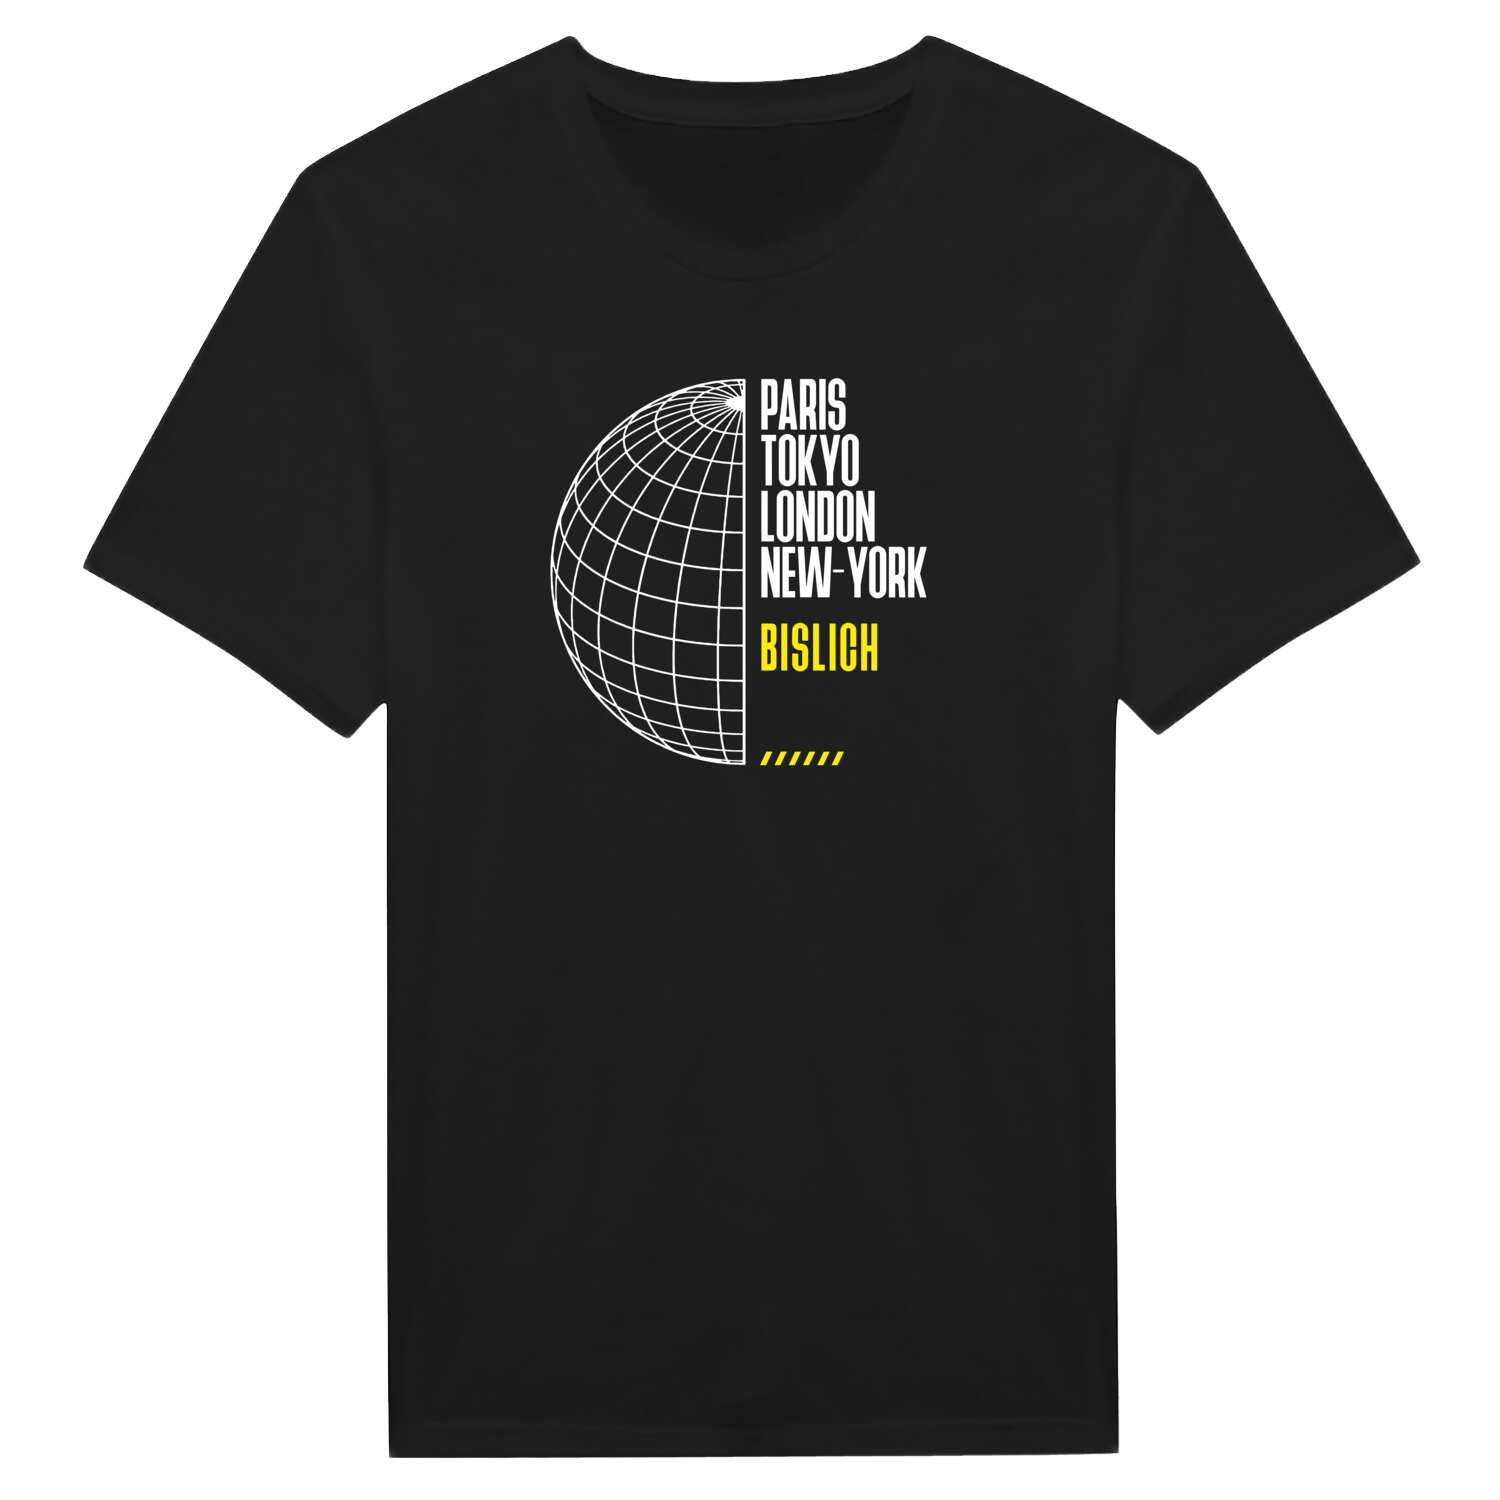 Bislich T-Shirt »Paris Tokyo London«